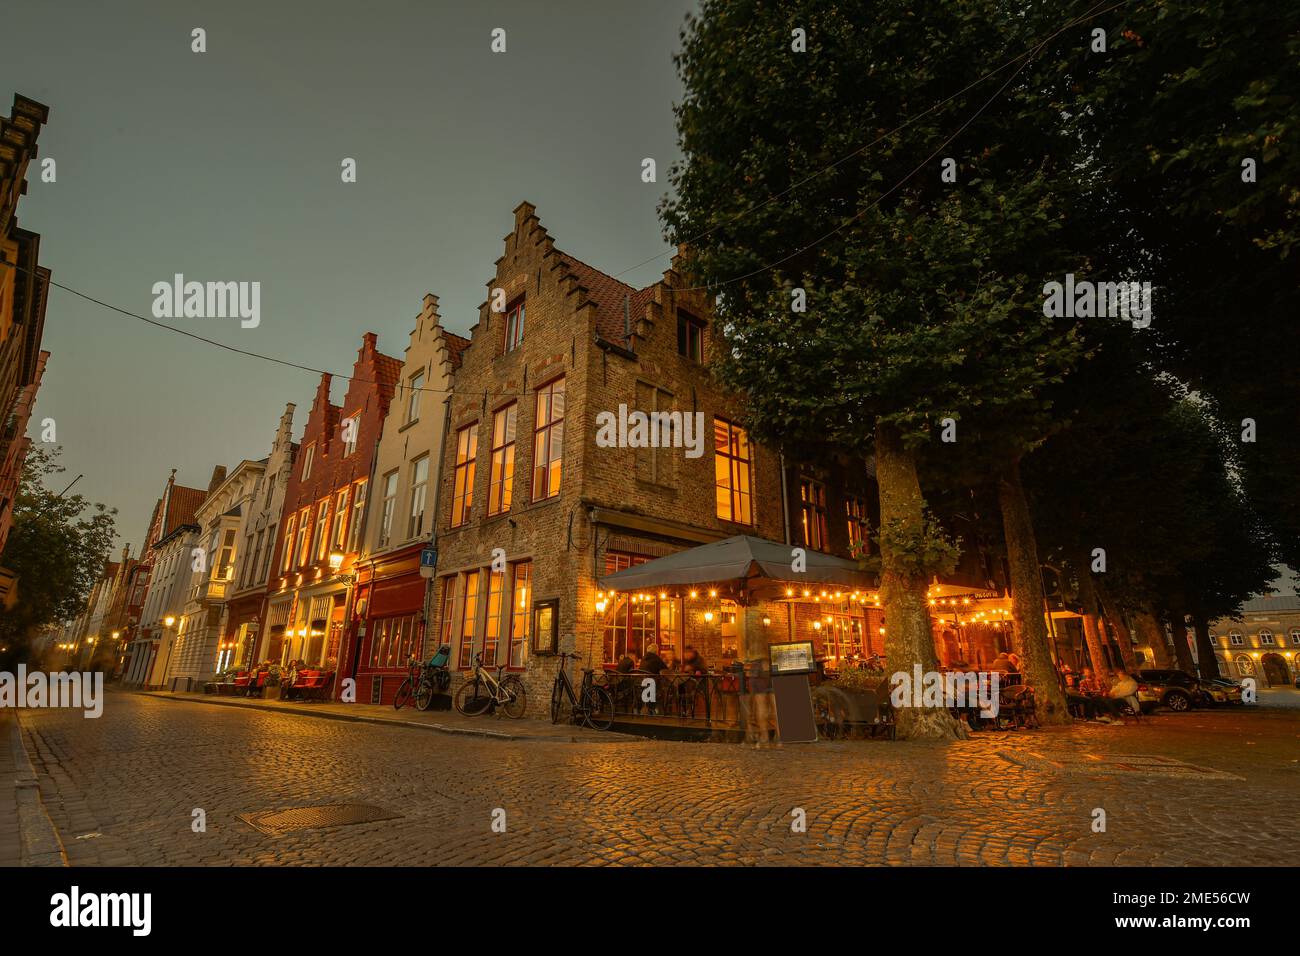 Belgique, Flandre Occidentale, Bruges, rue Cobblestone s'étendant devant un café-terrasse et une rangée de maisons de ville au crépuscule Banque D'Images